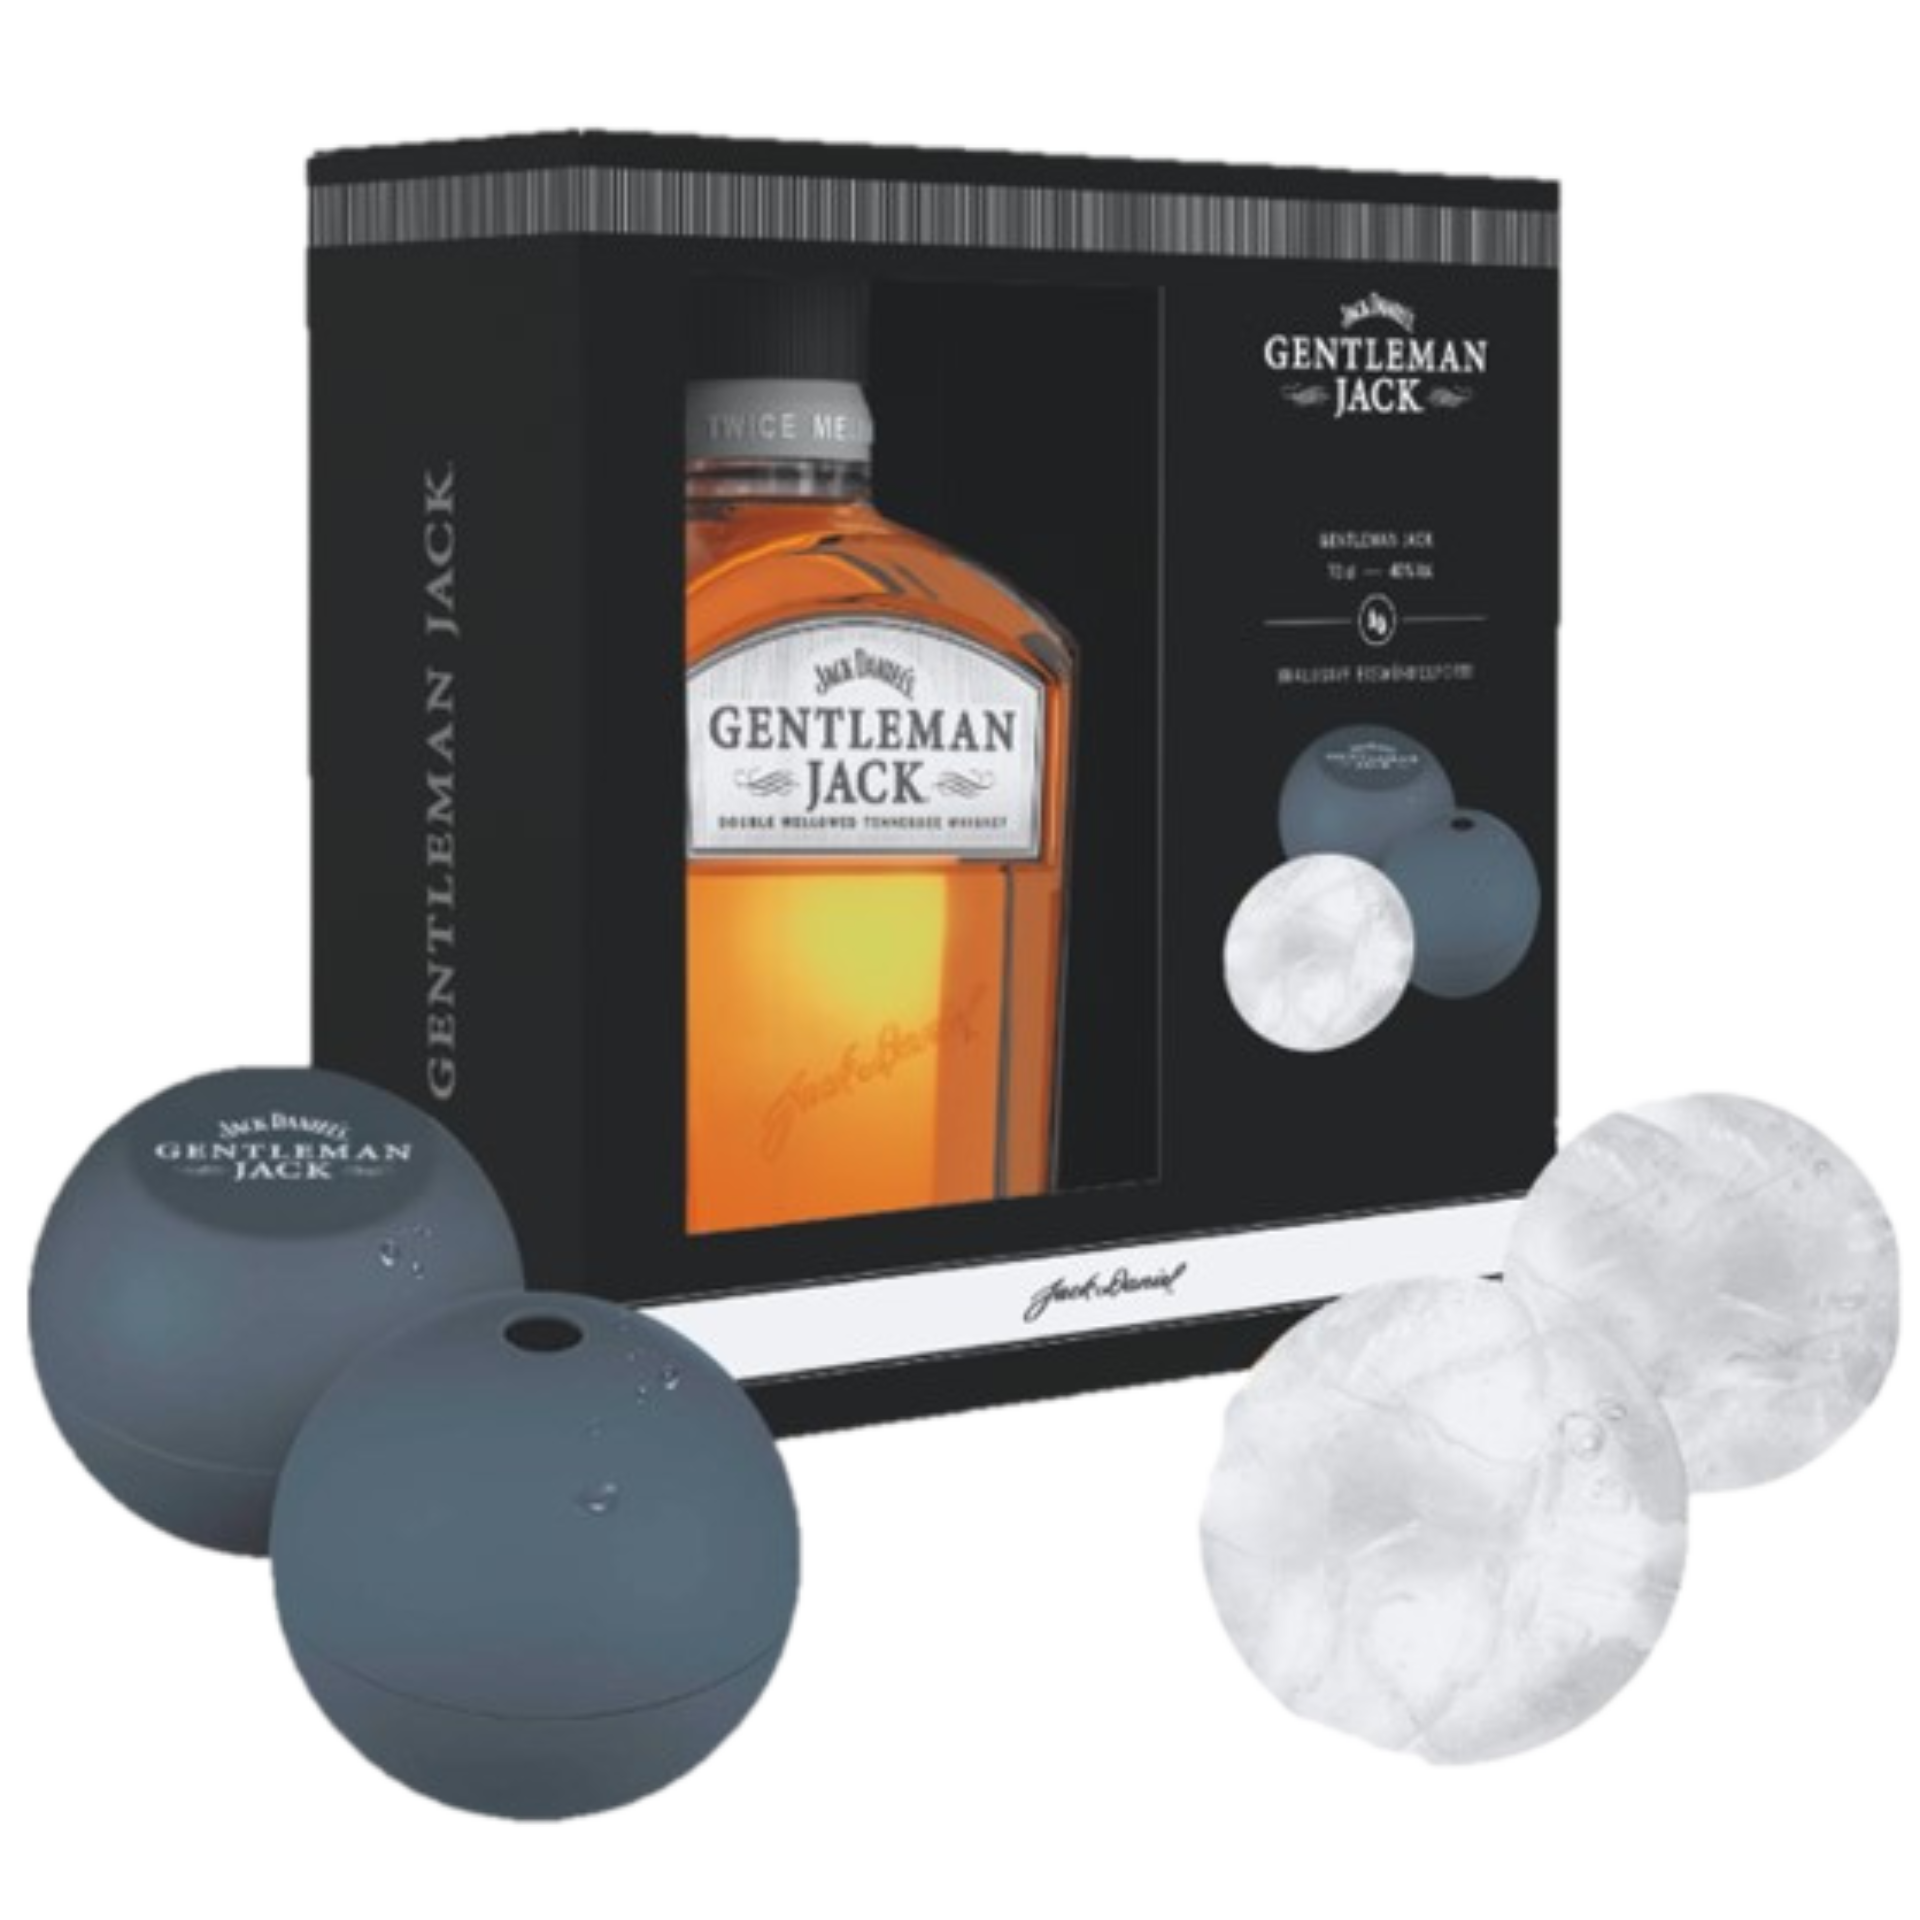 Jack Daniels Gentleman Jack Tennessee Whiskey 40% 0,7l + Eiswürfelform